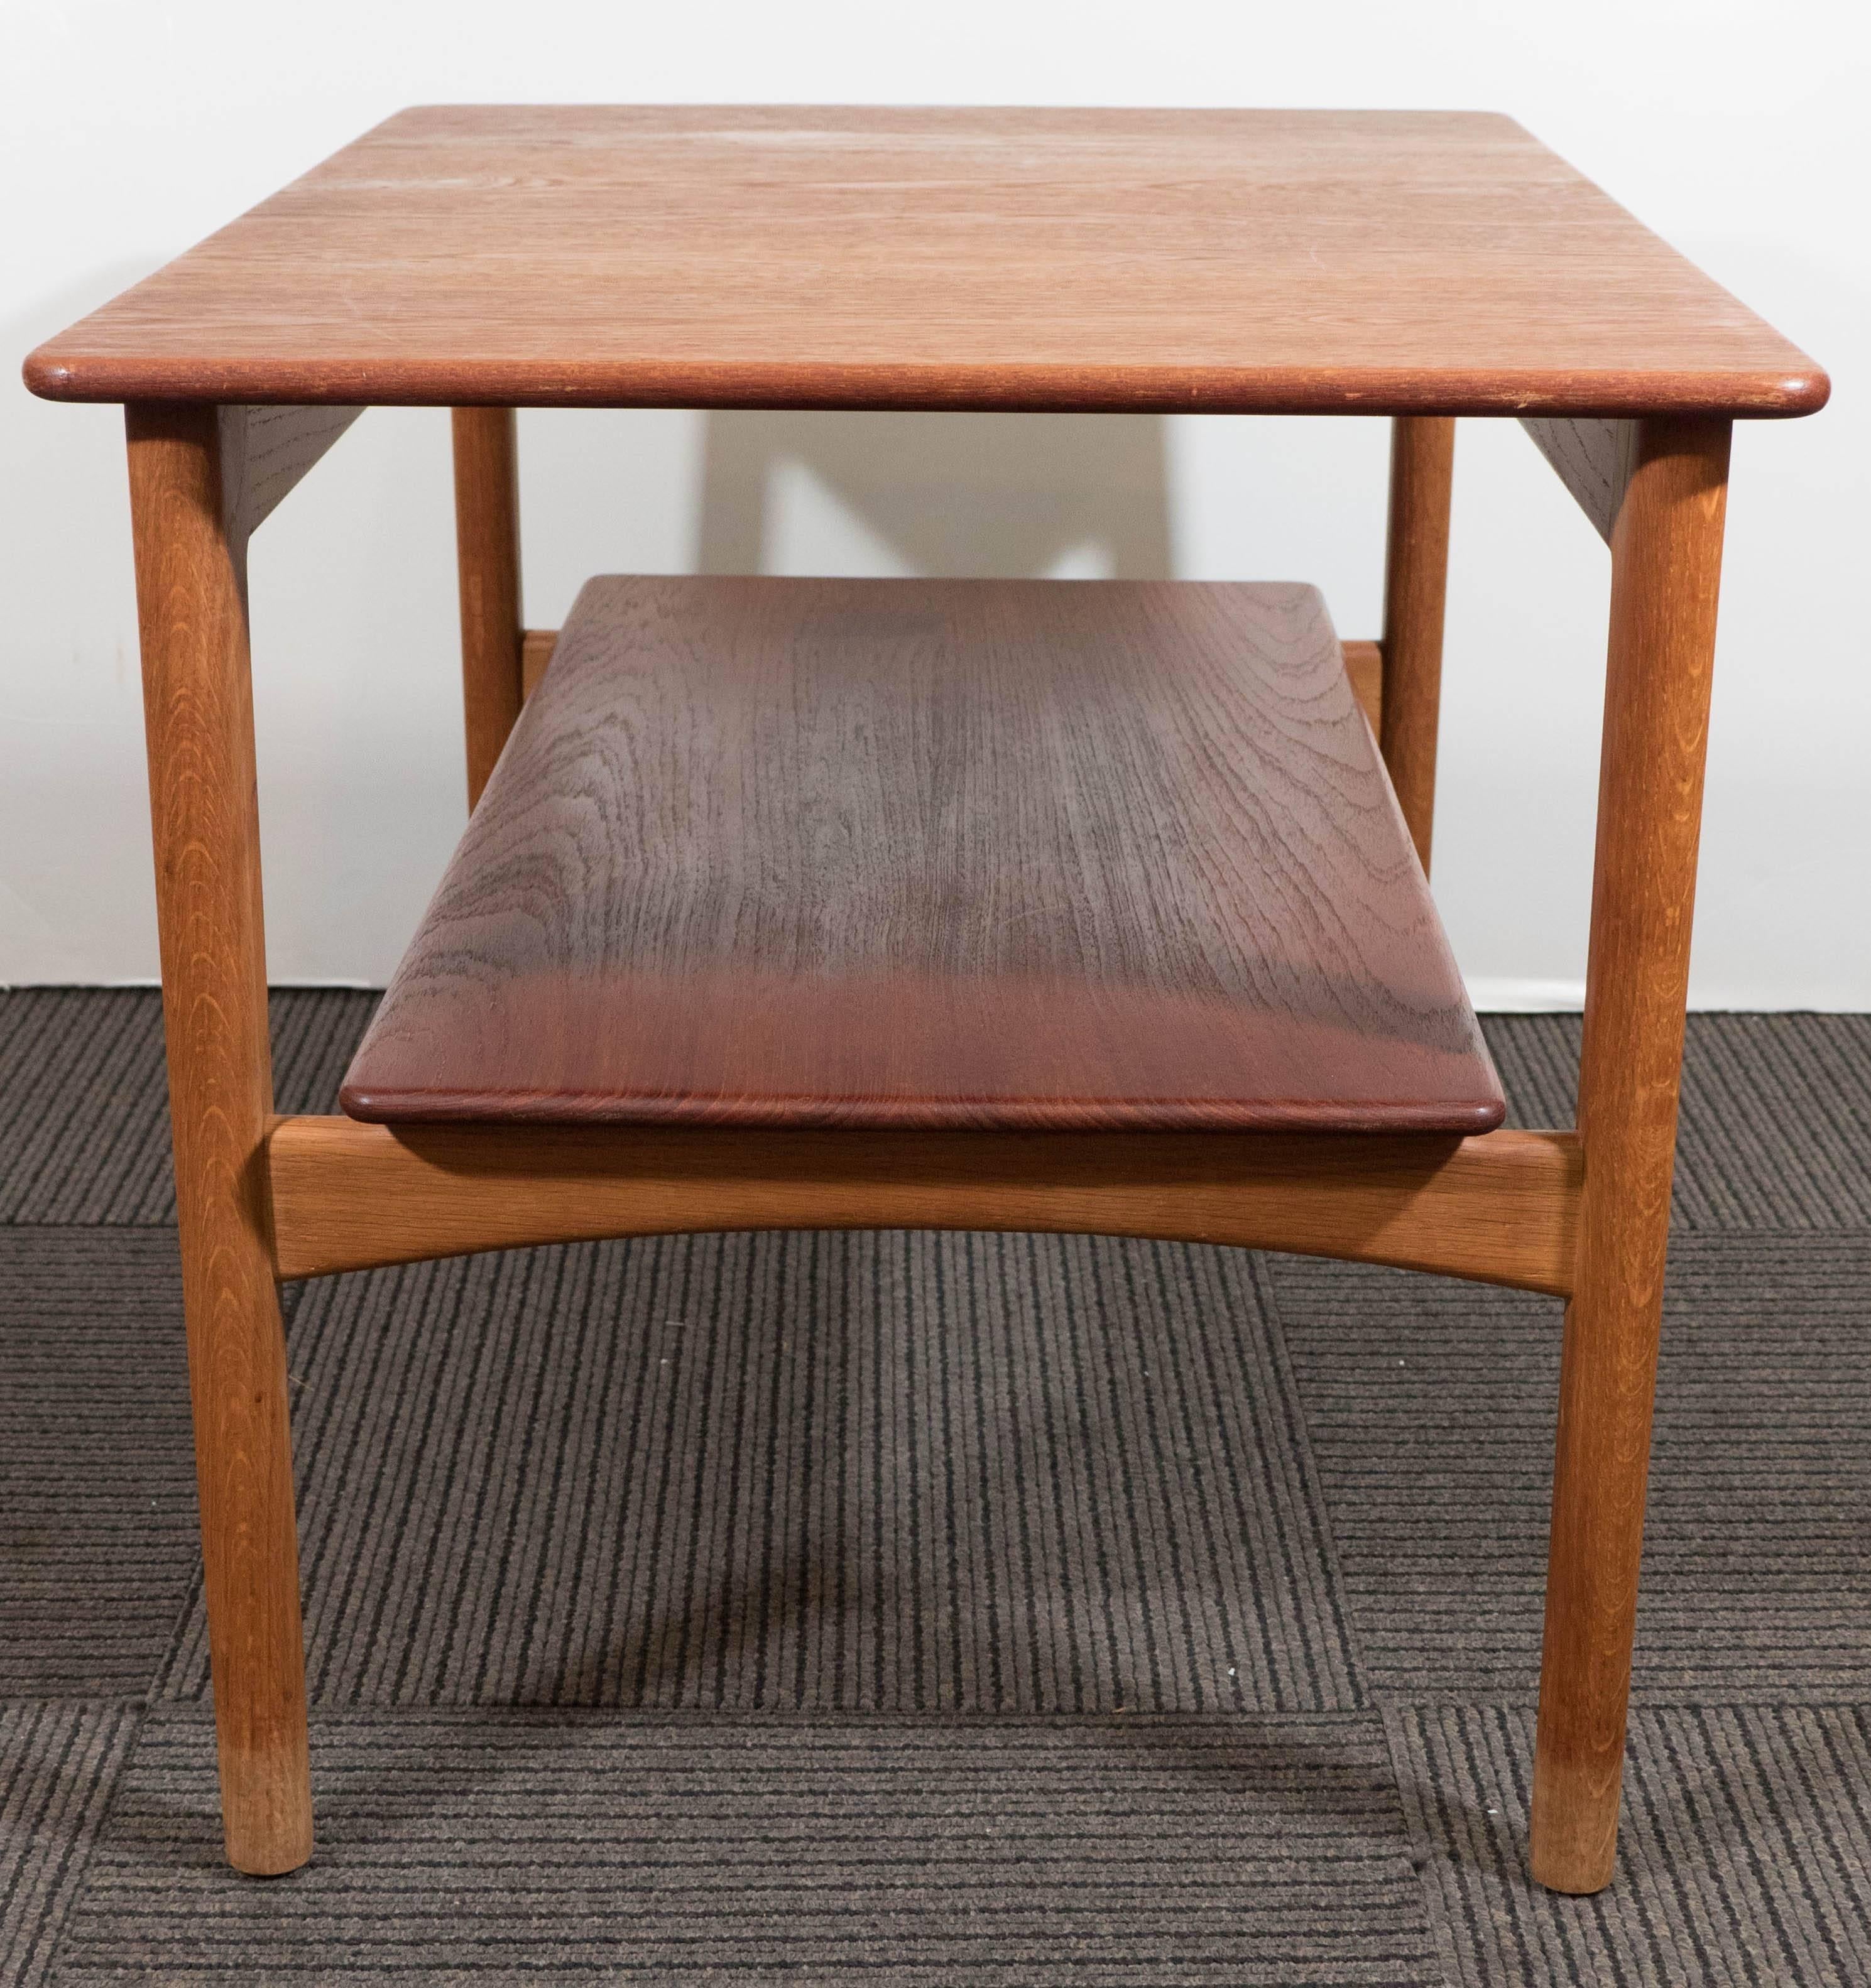 Wood Scandinavian Modern Teak Side Table with Shelf by Johannes Hansen of Denmark